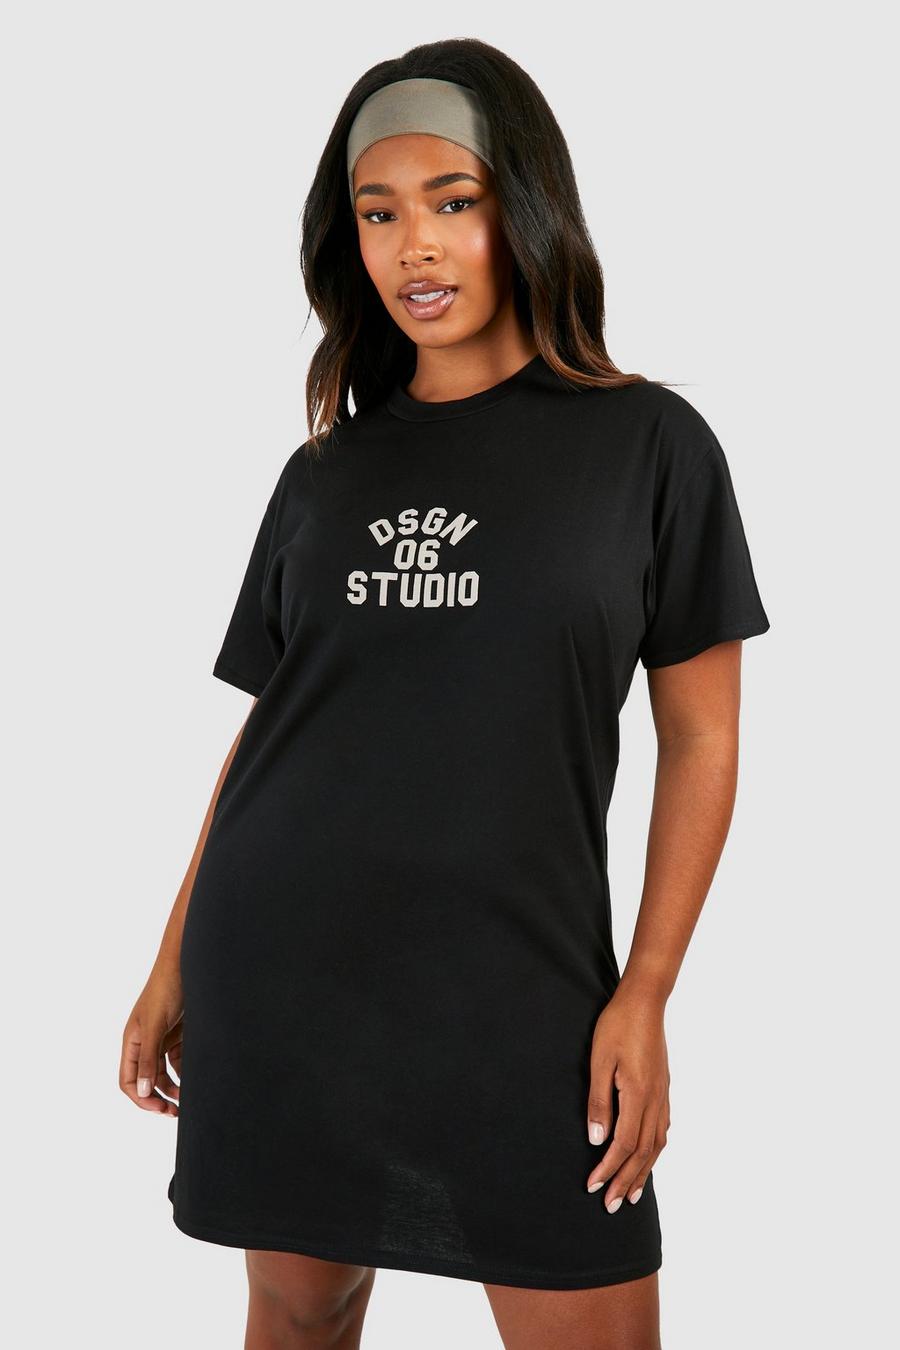 Vestito T-shirt Plus Size con stampa Dsgn Studio, Black image number 1